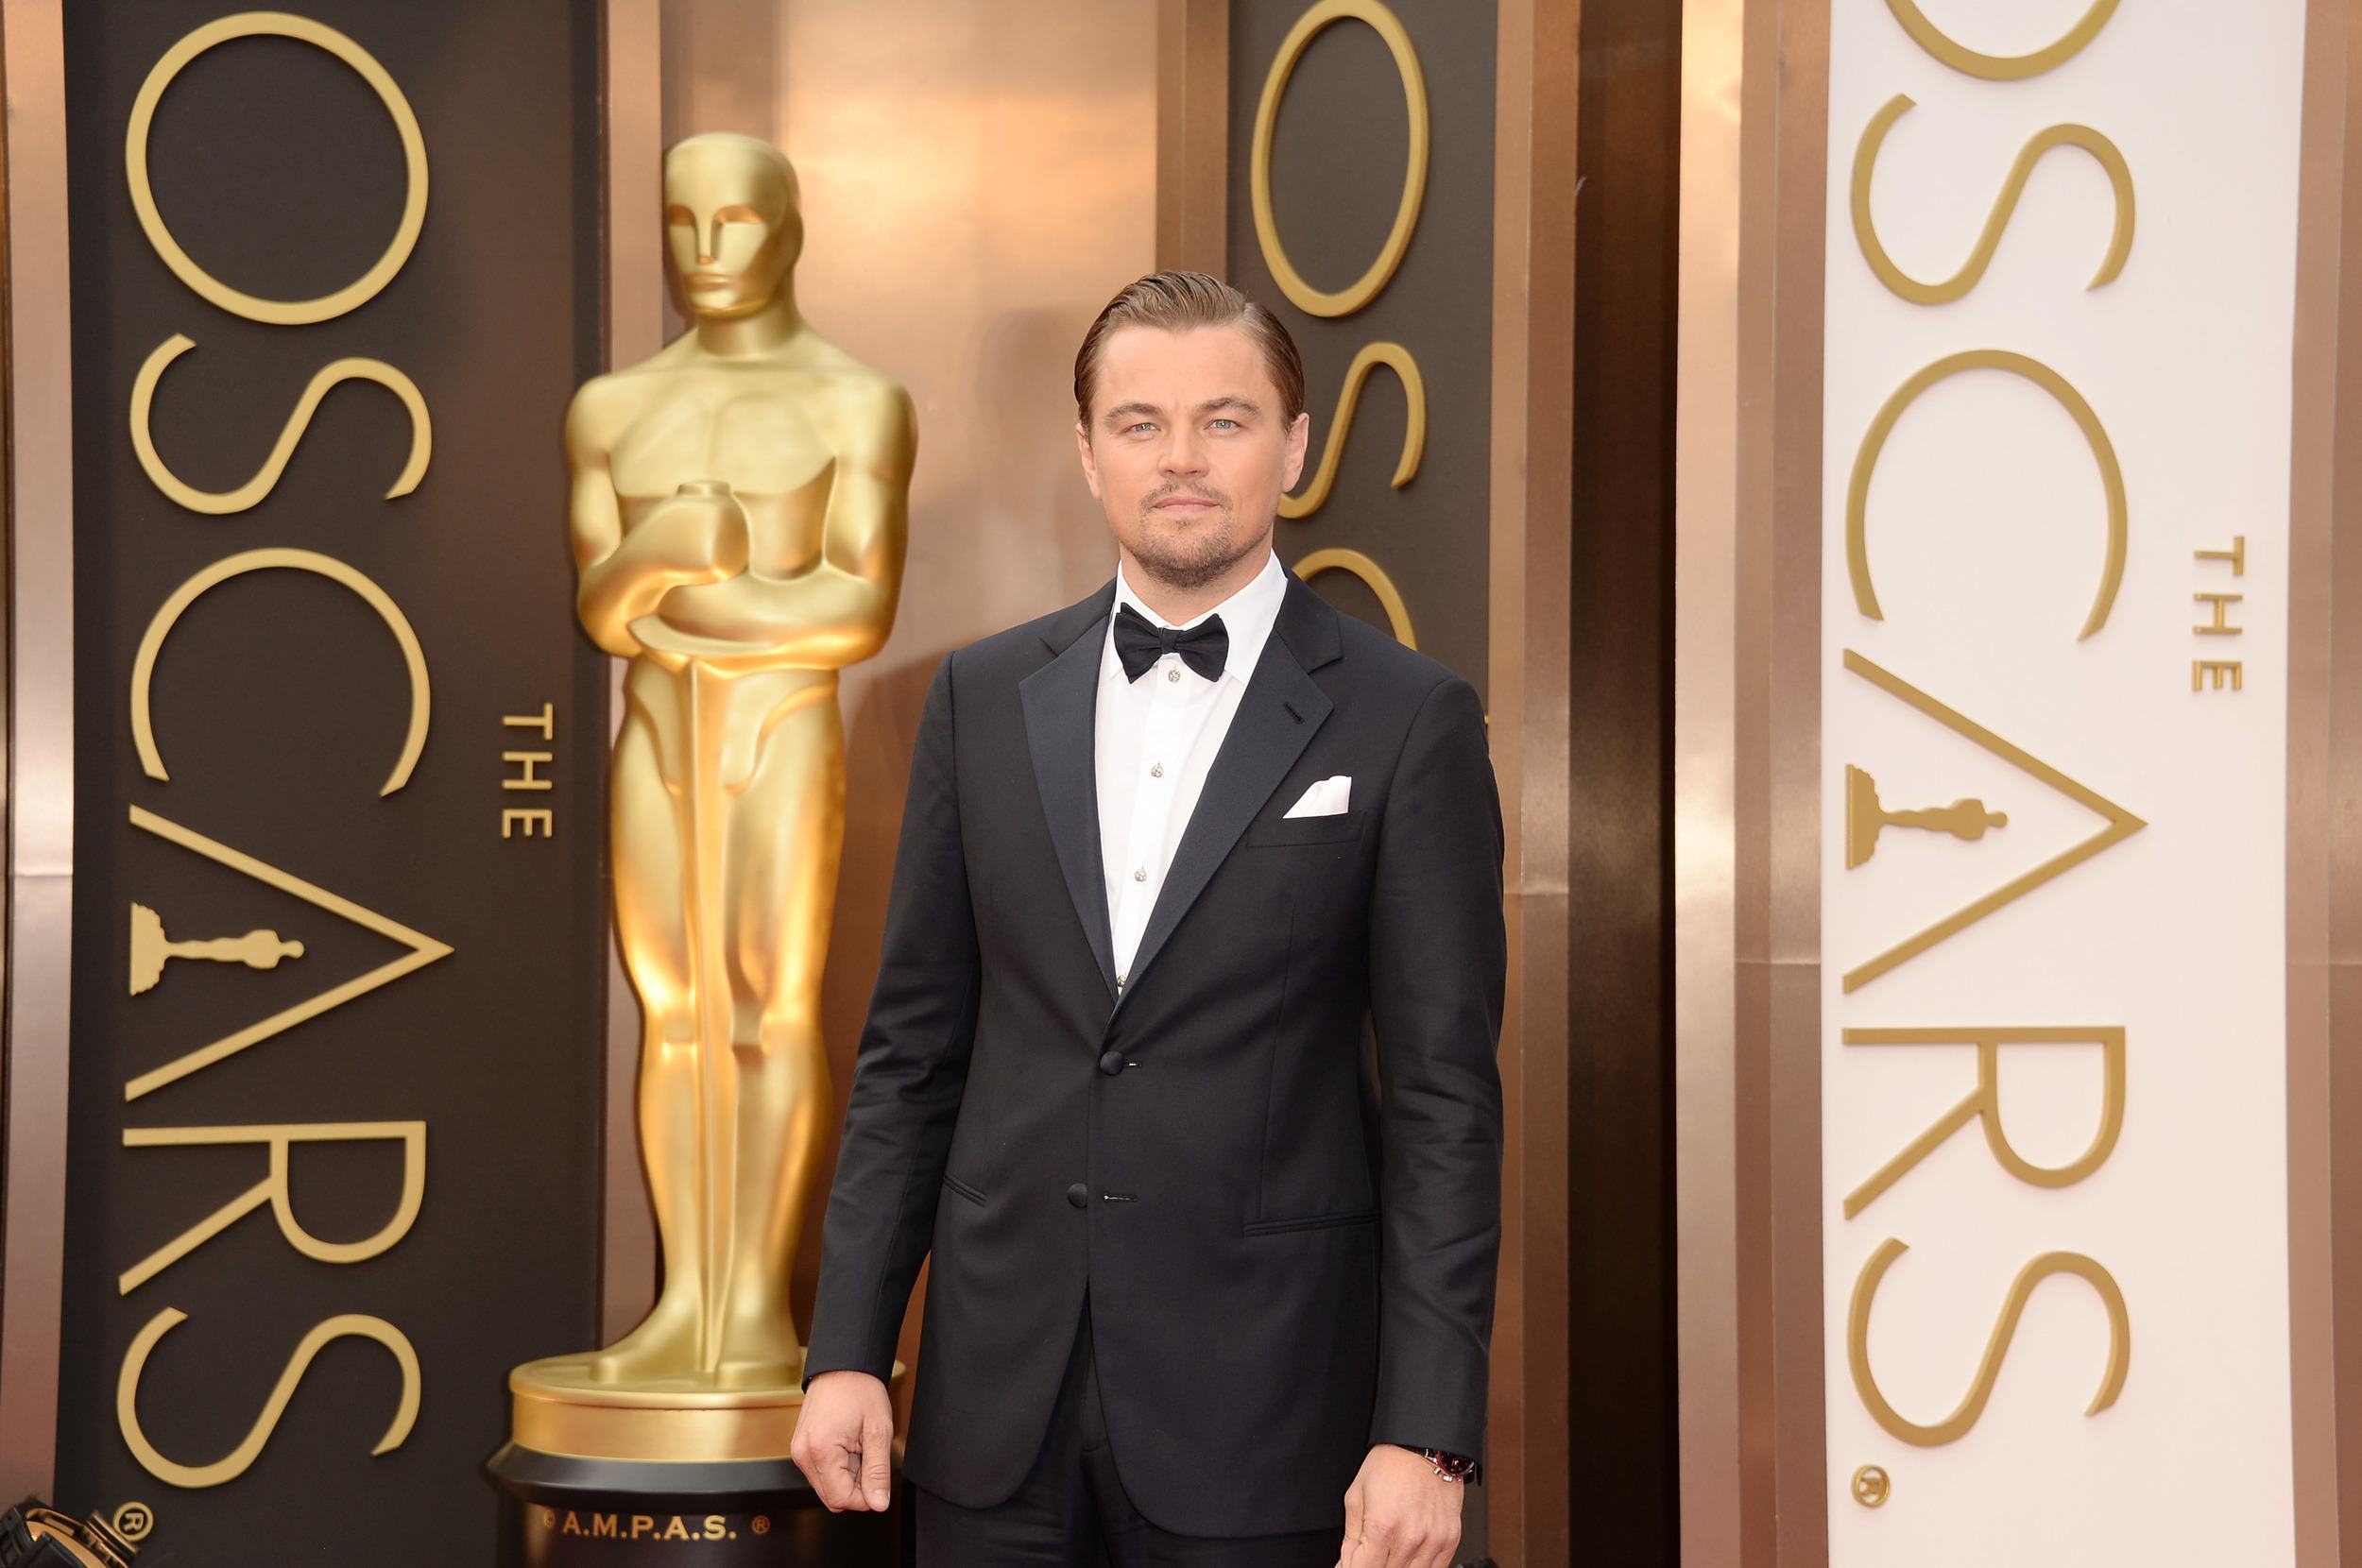 De deficiente a explorador conheça os personagens de DiCaprio no Oscar